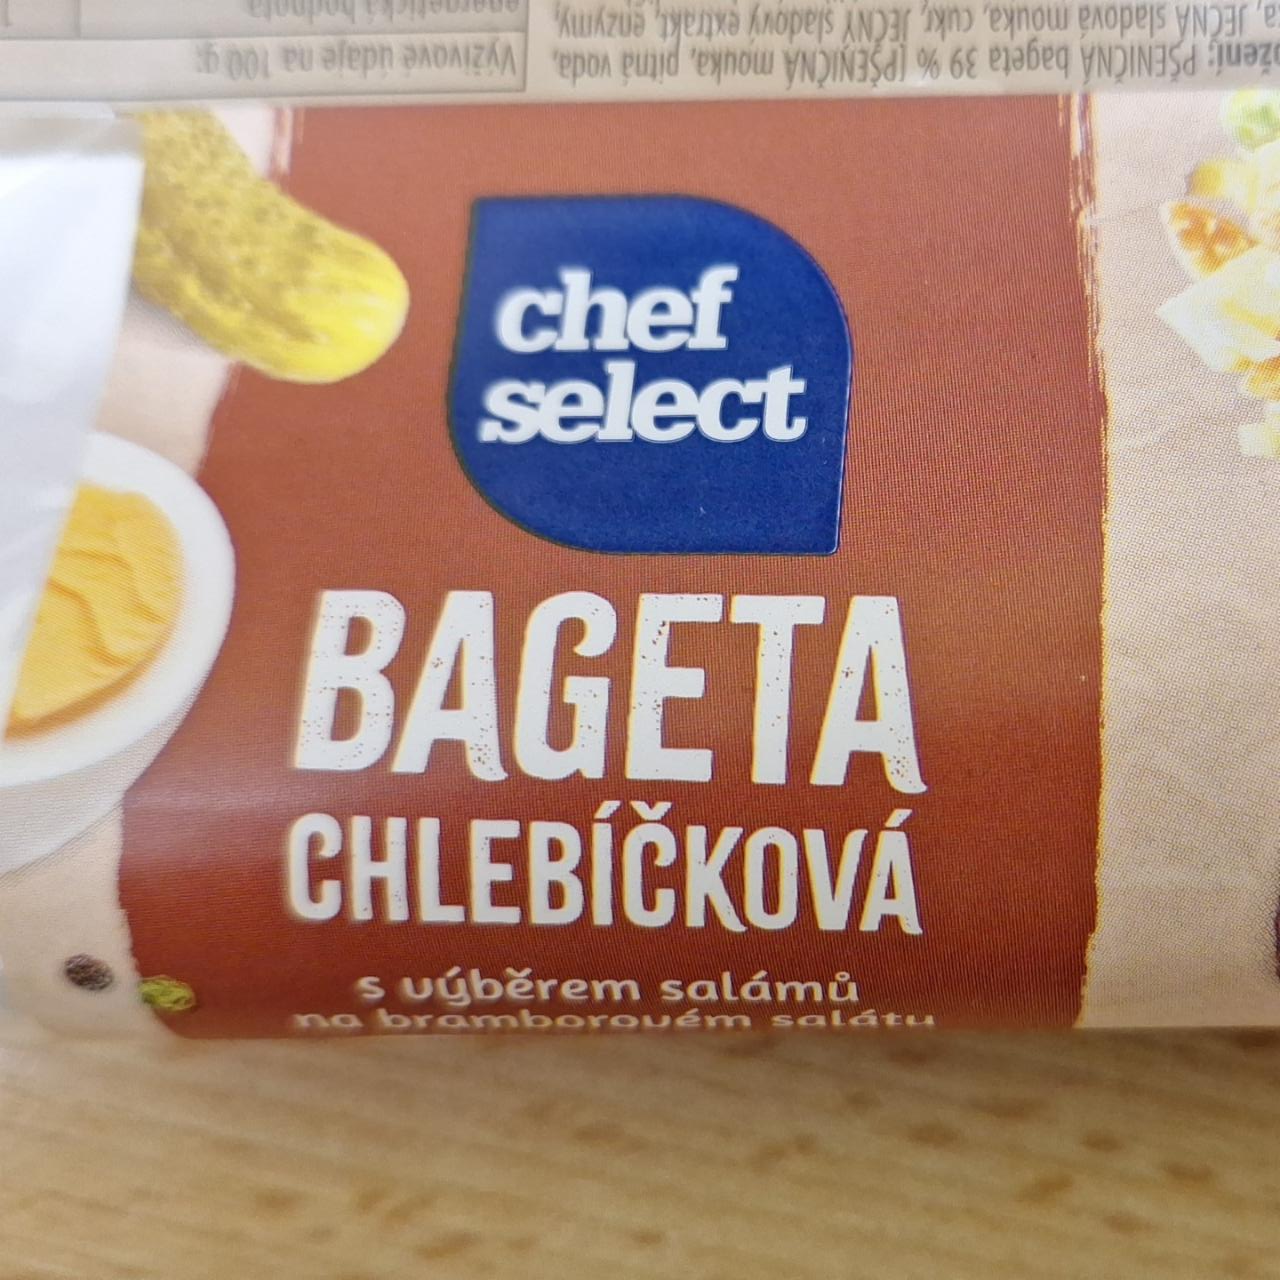 Fotografie - Bageta chlebíčková Chef Select